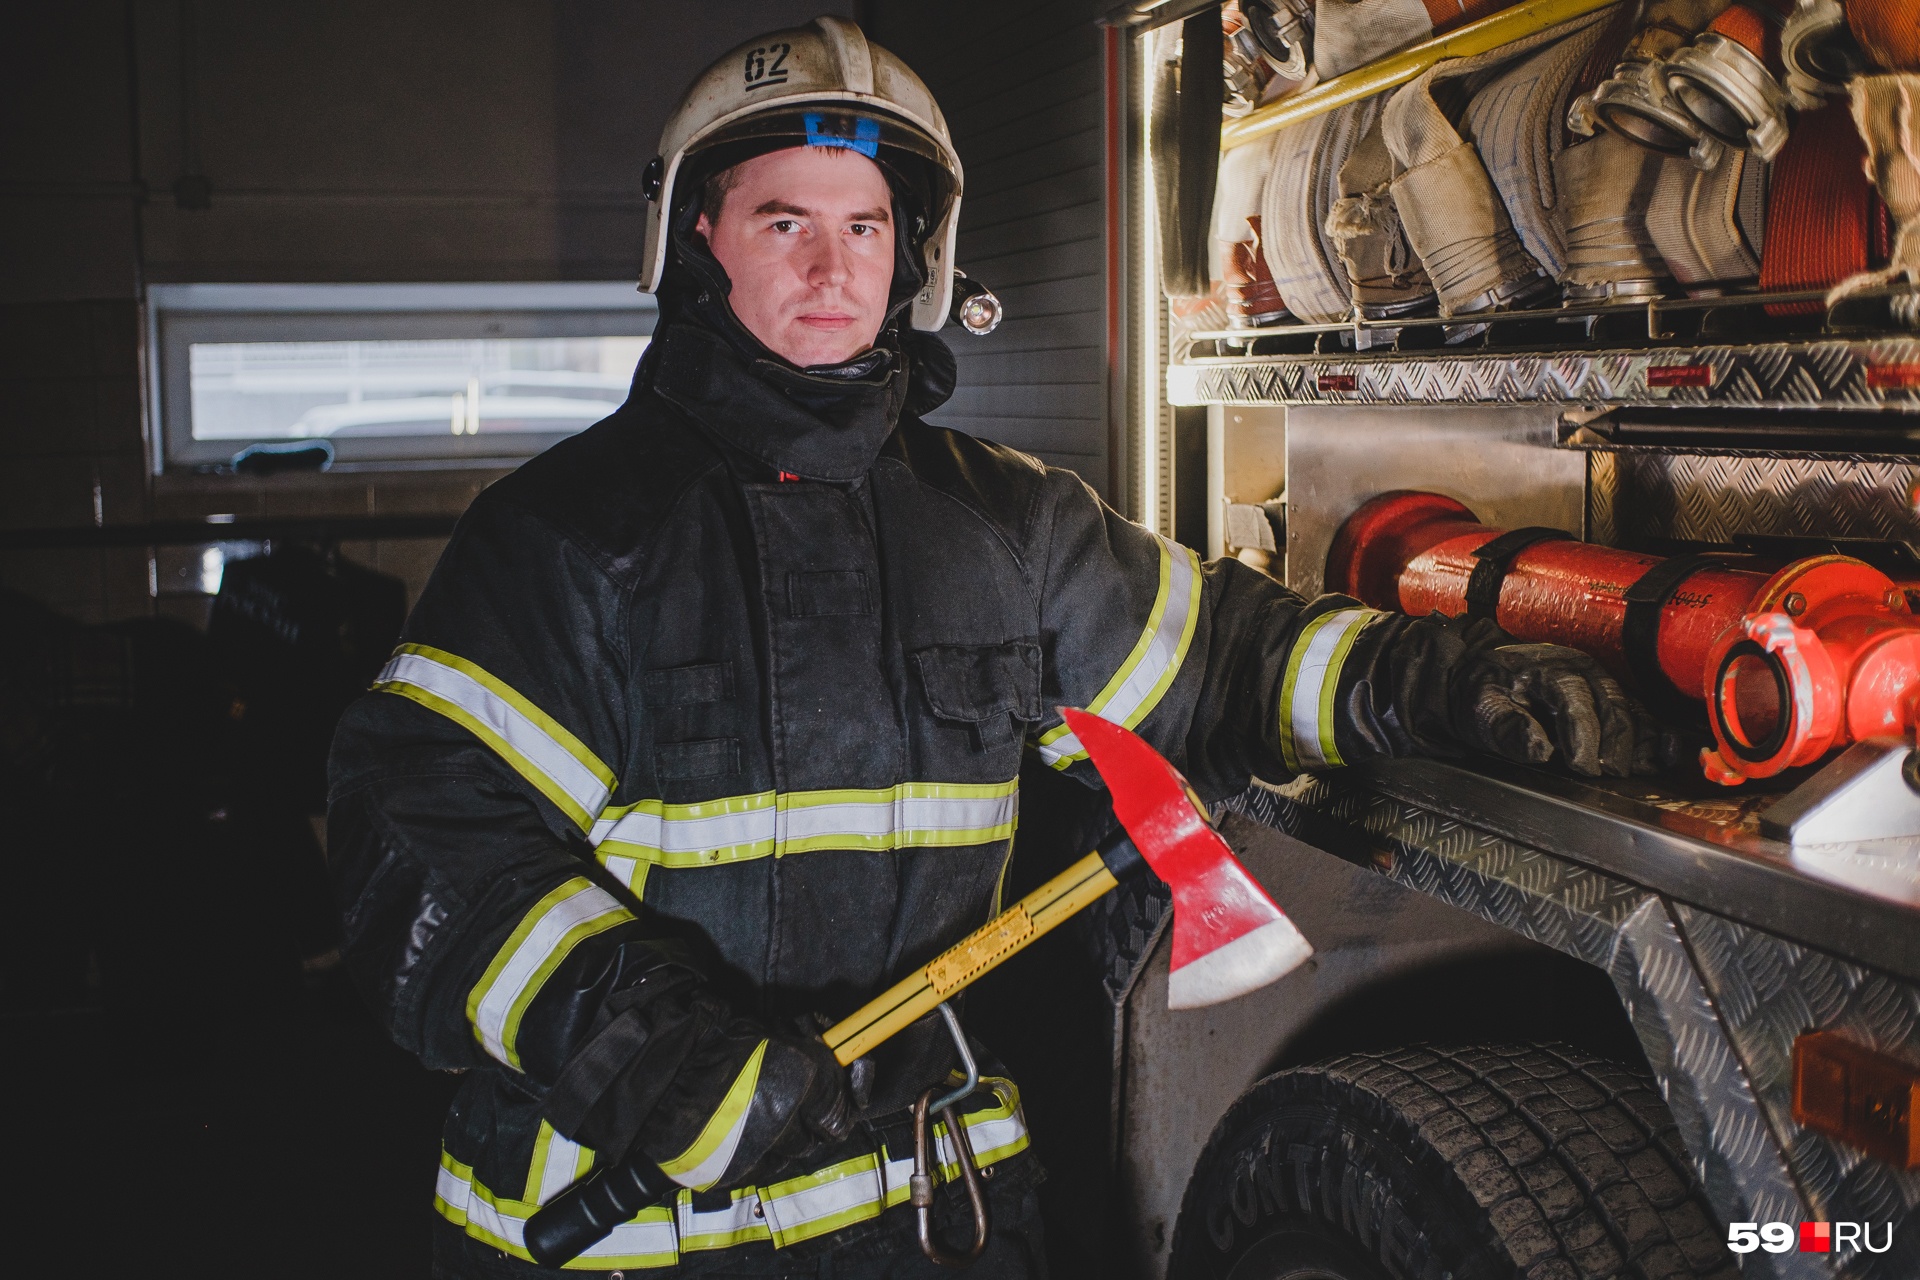 Это пожарный из Кудымкара Денис Найданов. Он считает свою профессию одной из самых нужных. В руках Денис держит поясной пожарный топор, который предназначен для вскрытия кровли, дверей, окон, разборки завалов